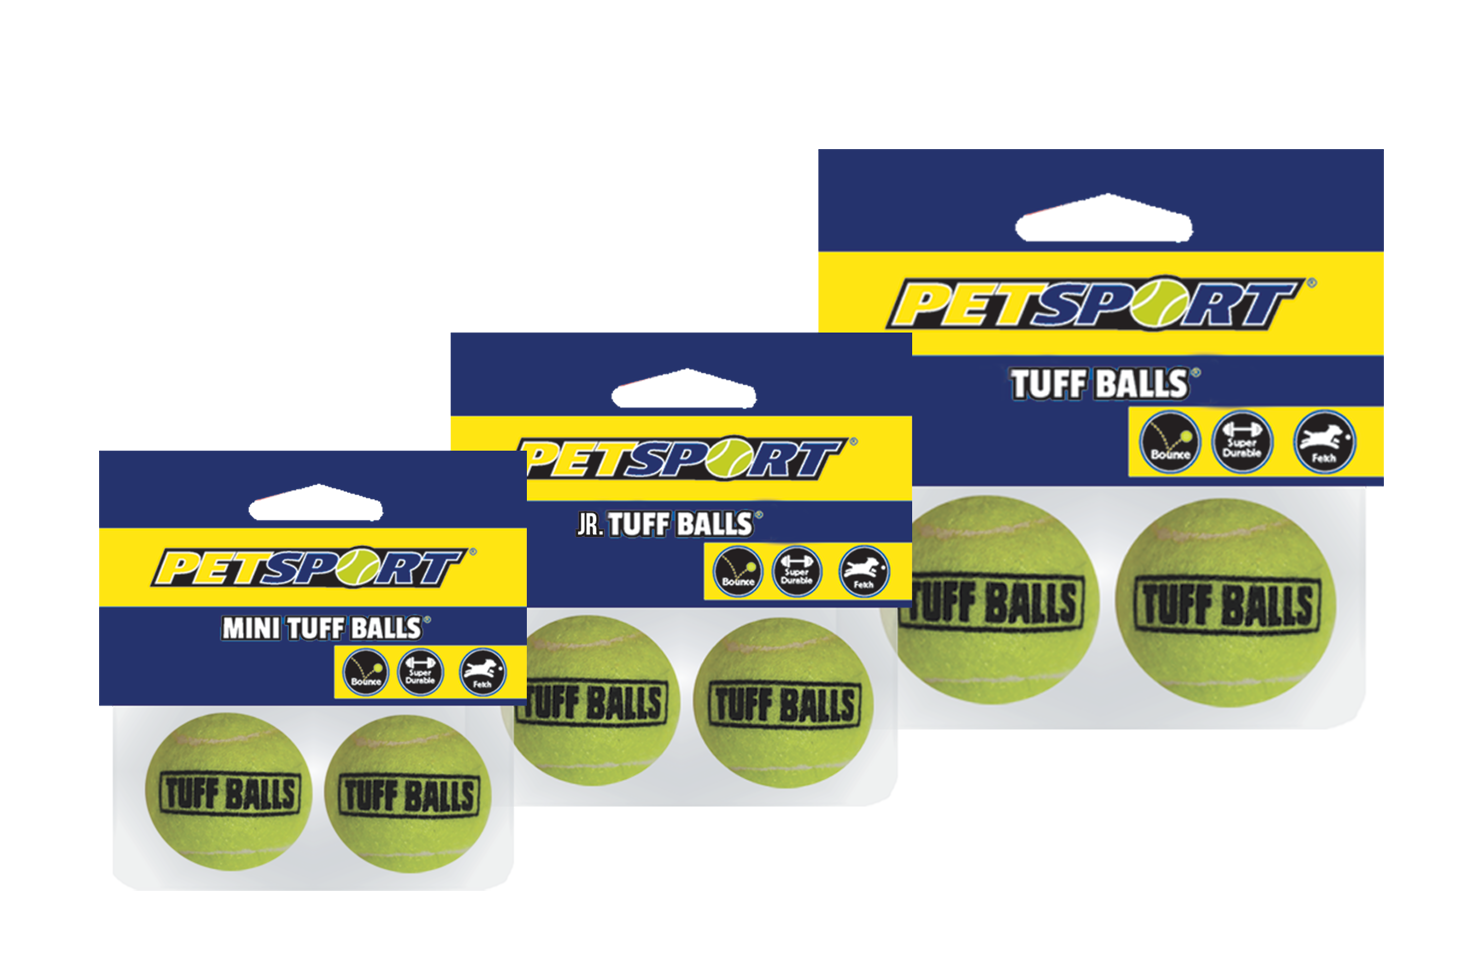 Afbeelding Tuff Balls 6 Cm 2-Pack door K-9 Security dogs